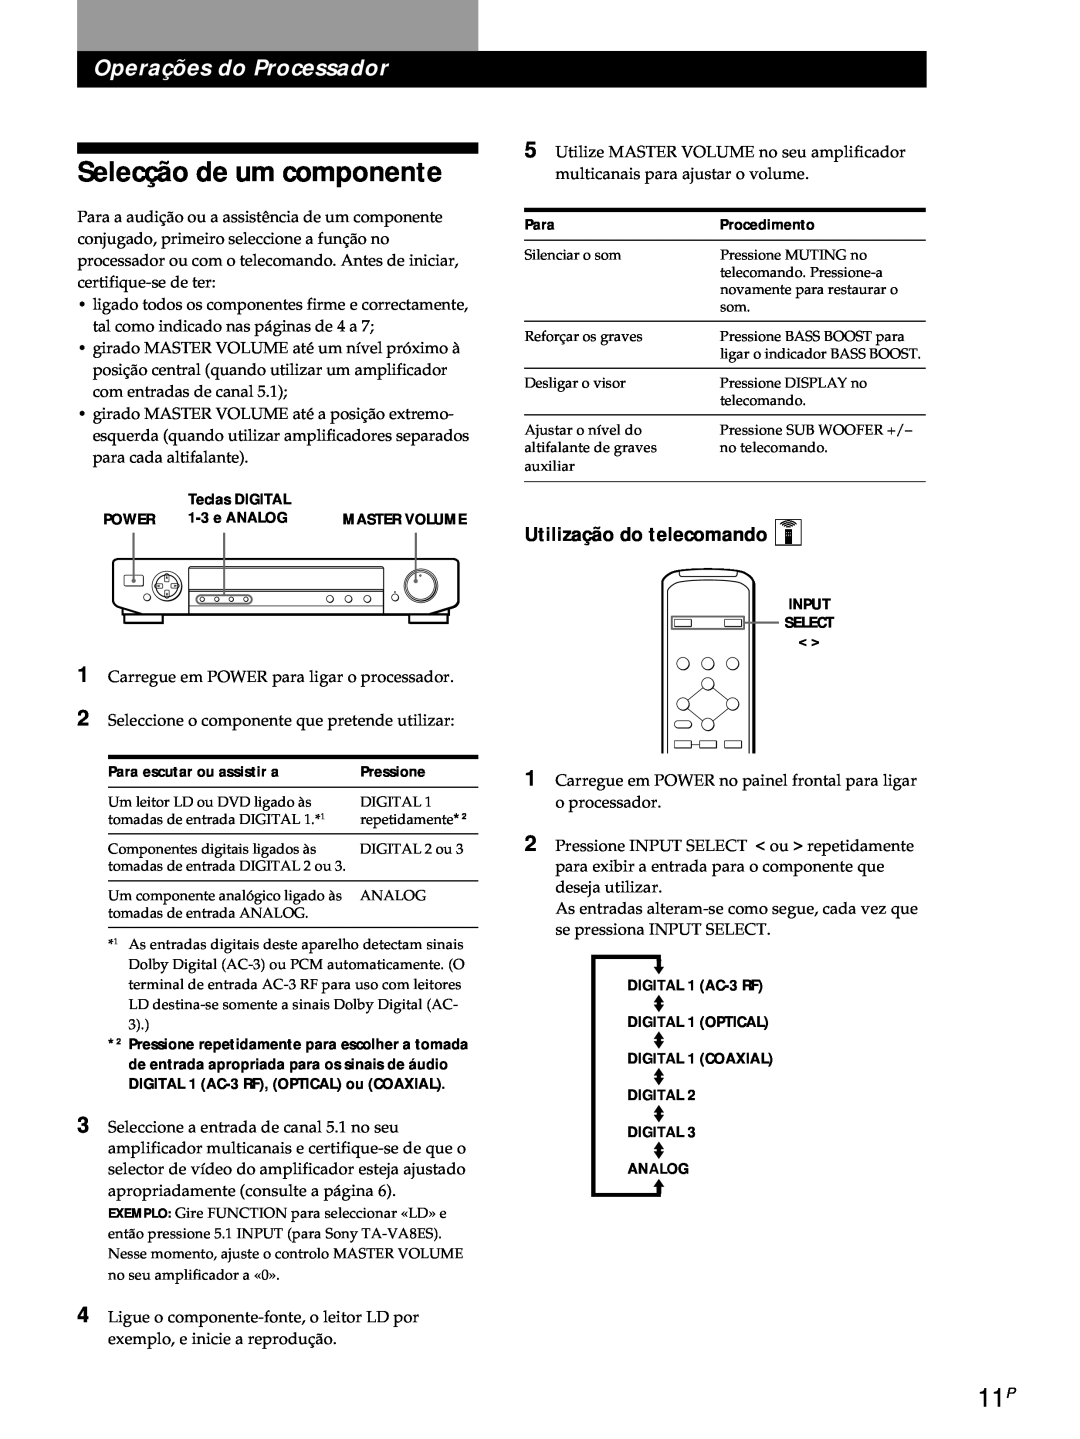 Sony SDP-E800 operating instructions Selecção de um componente, Operações do Processador, Utilização do telecomando Z 